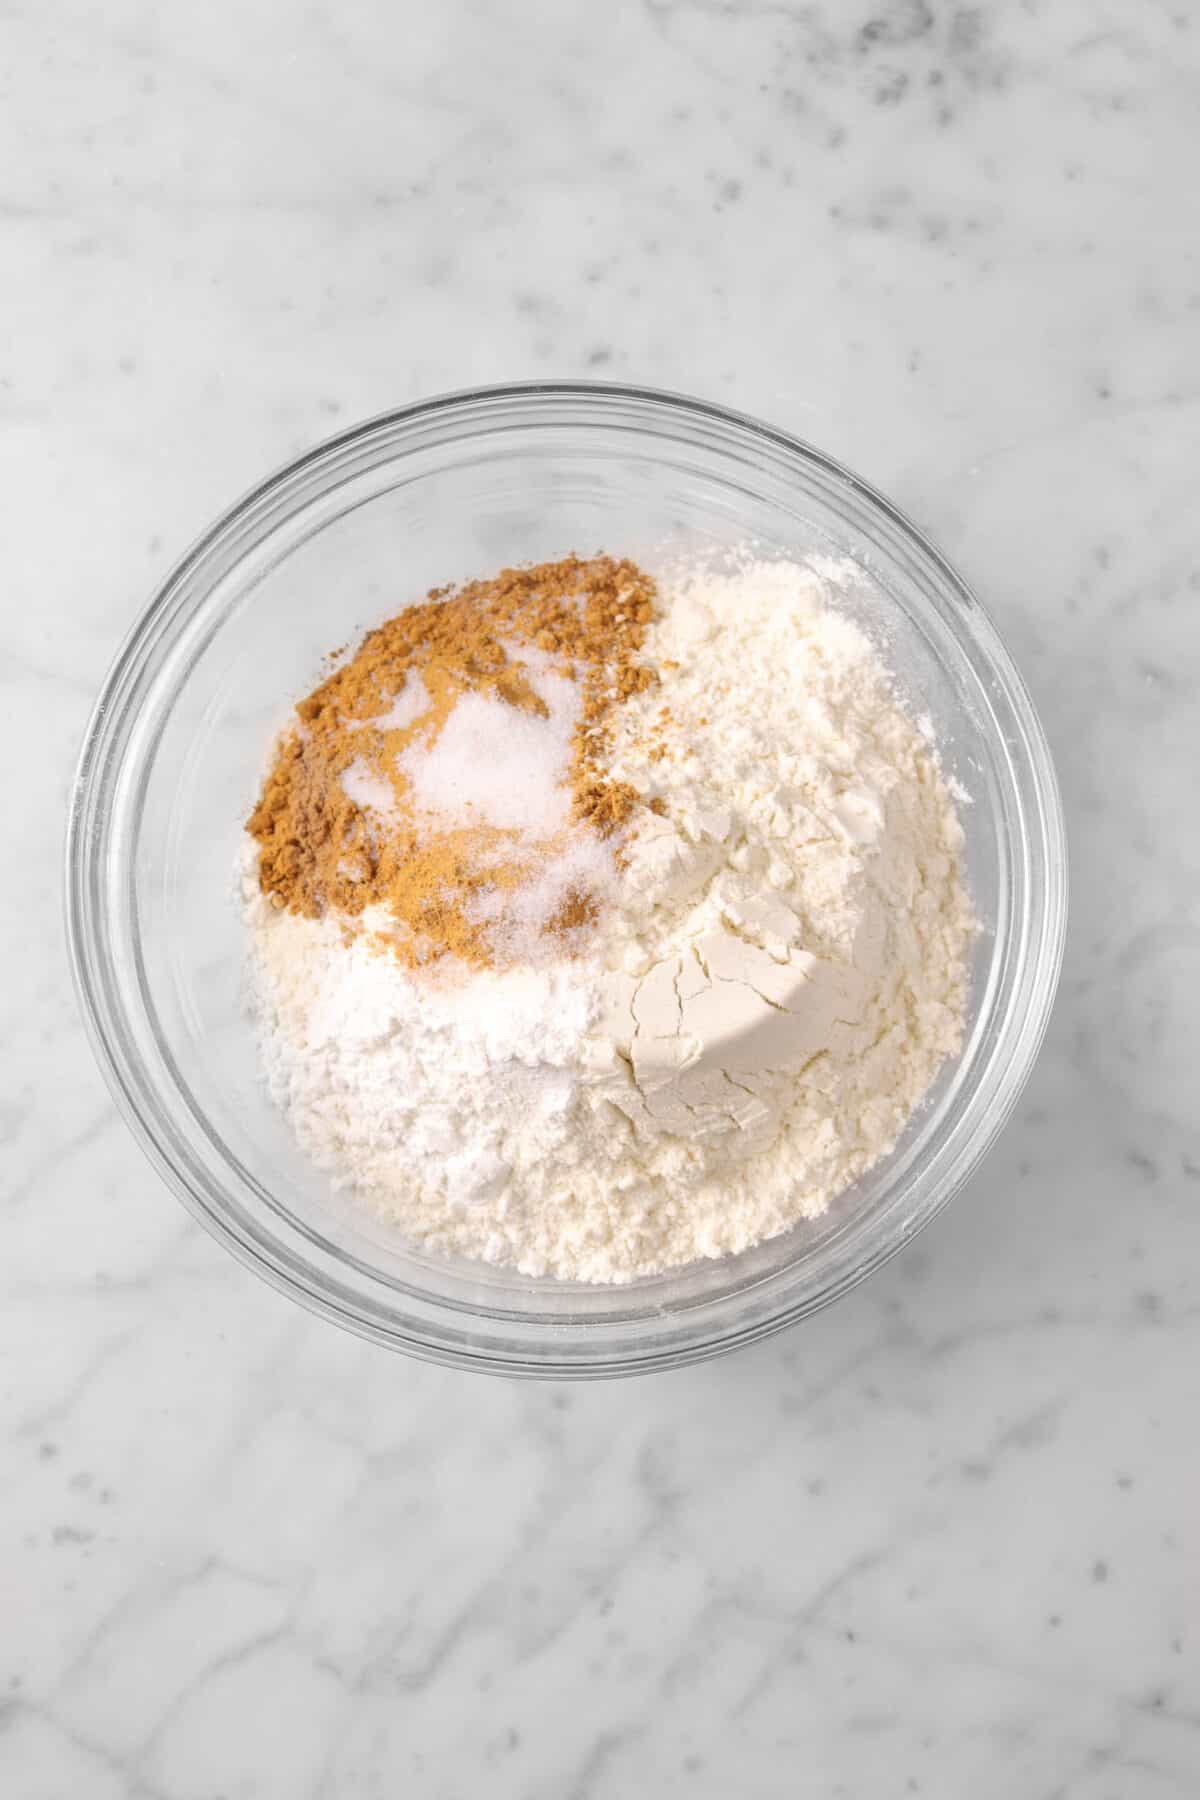 flour, sugar, cinnamon, baking powder, and salt in glass bowl